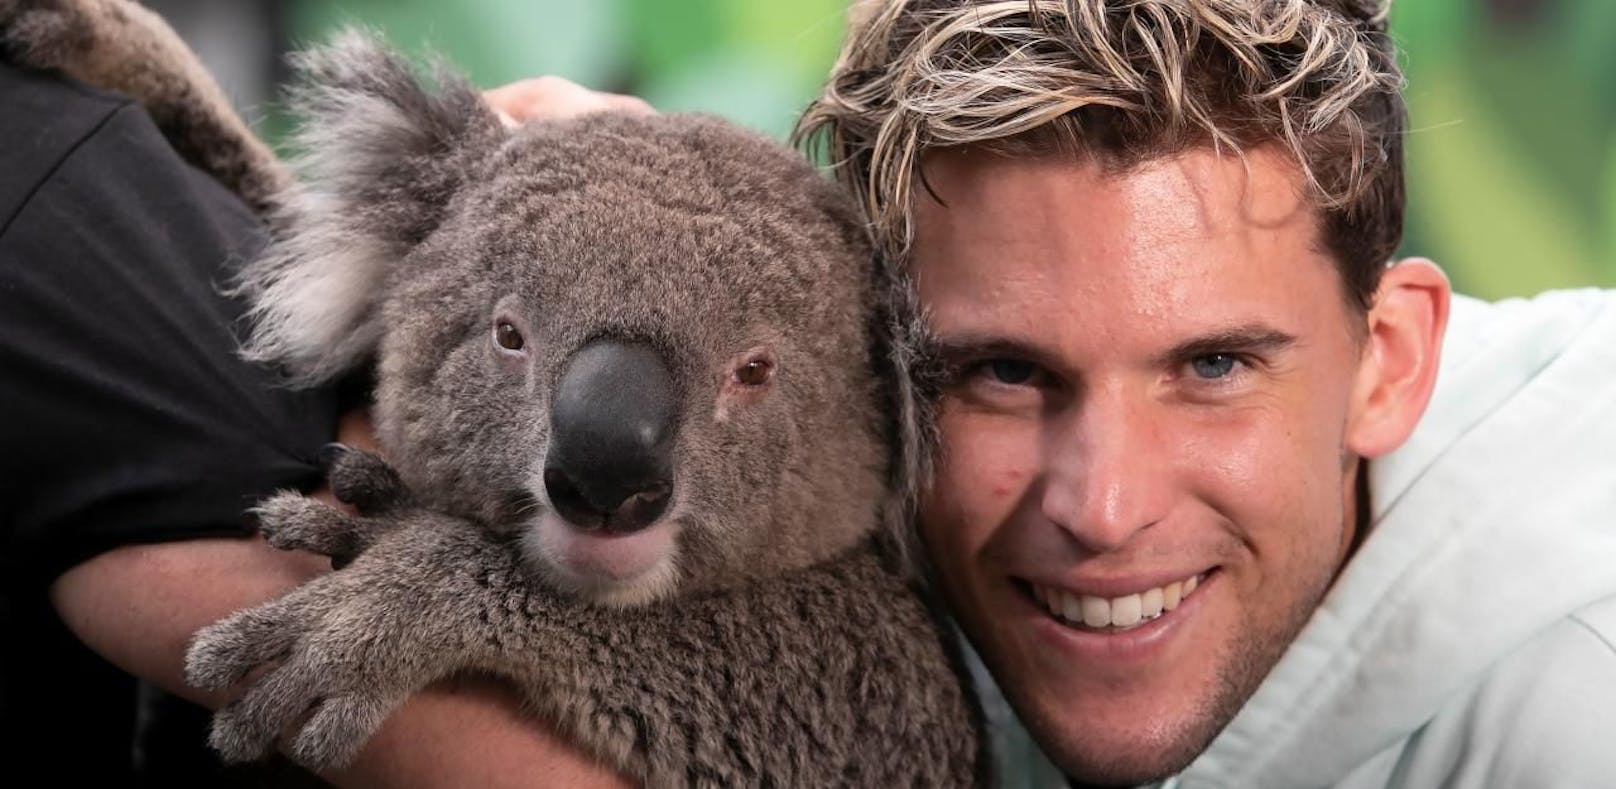 Dominic Thiem knuddelt einen Koala. Der bringt ihm in Australien offensichtlich Glück.